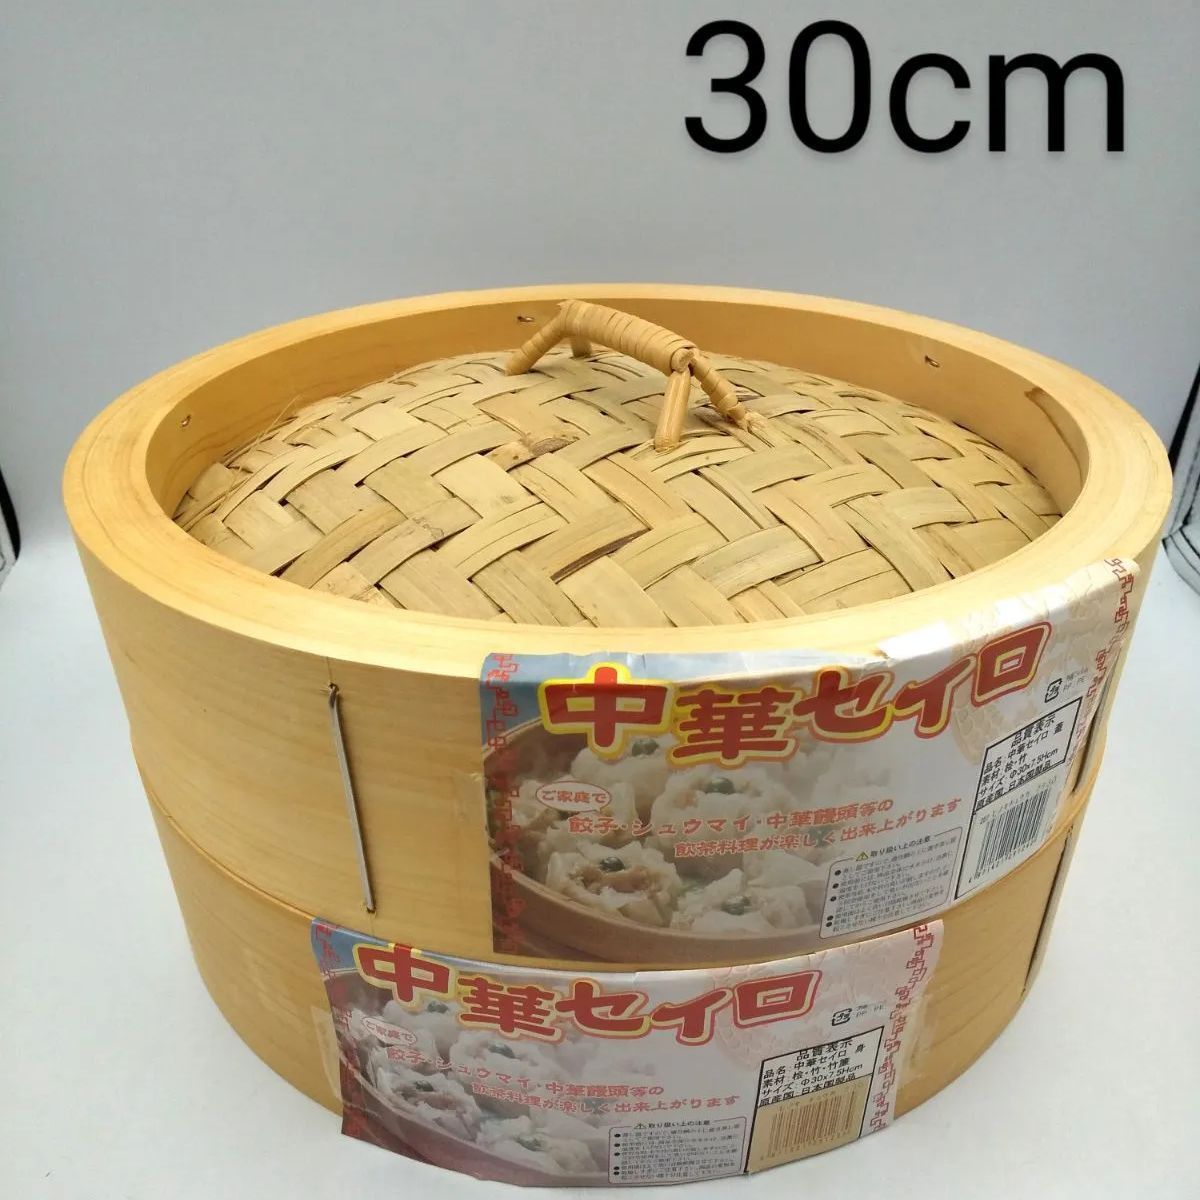 中華セイロ 蒸籠 桧 竹 竹簾 30cm 日本国製品 新品未使用 - メルカリ